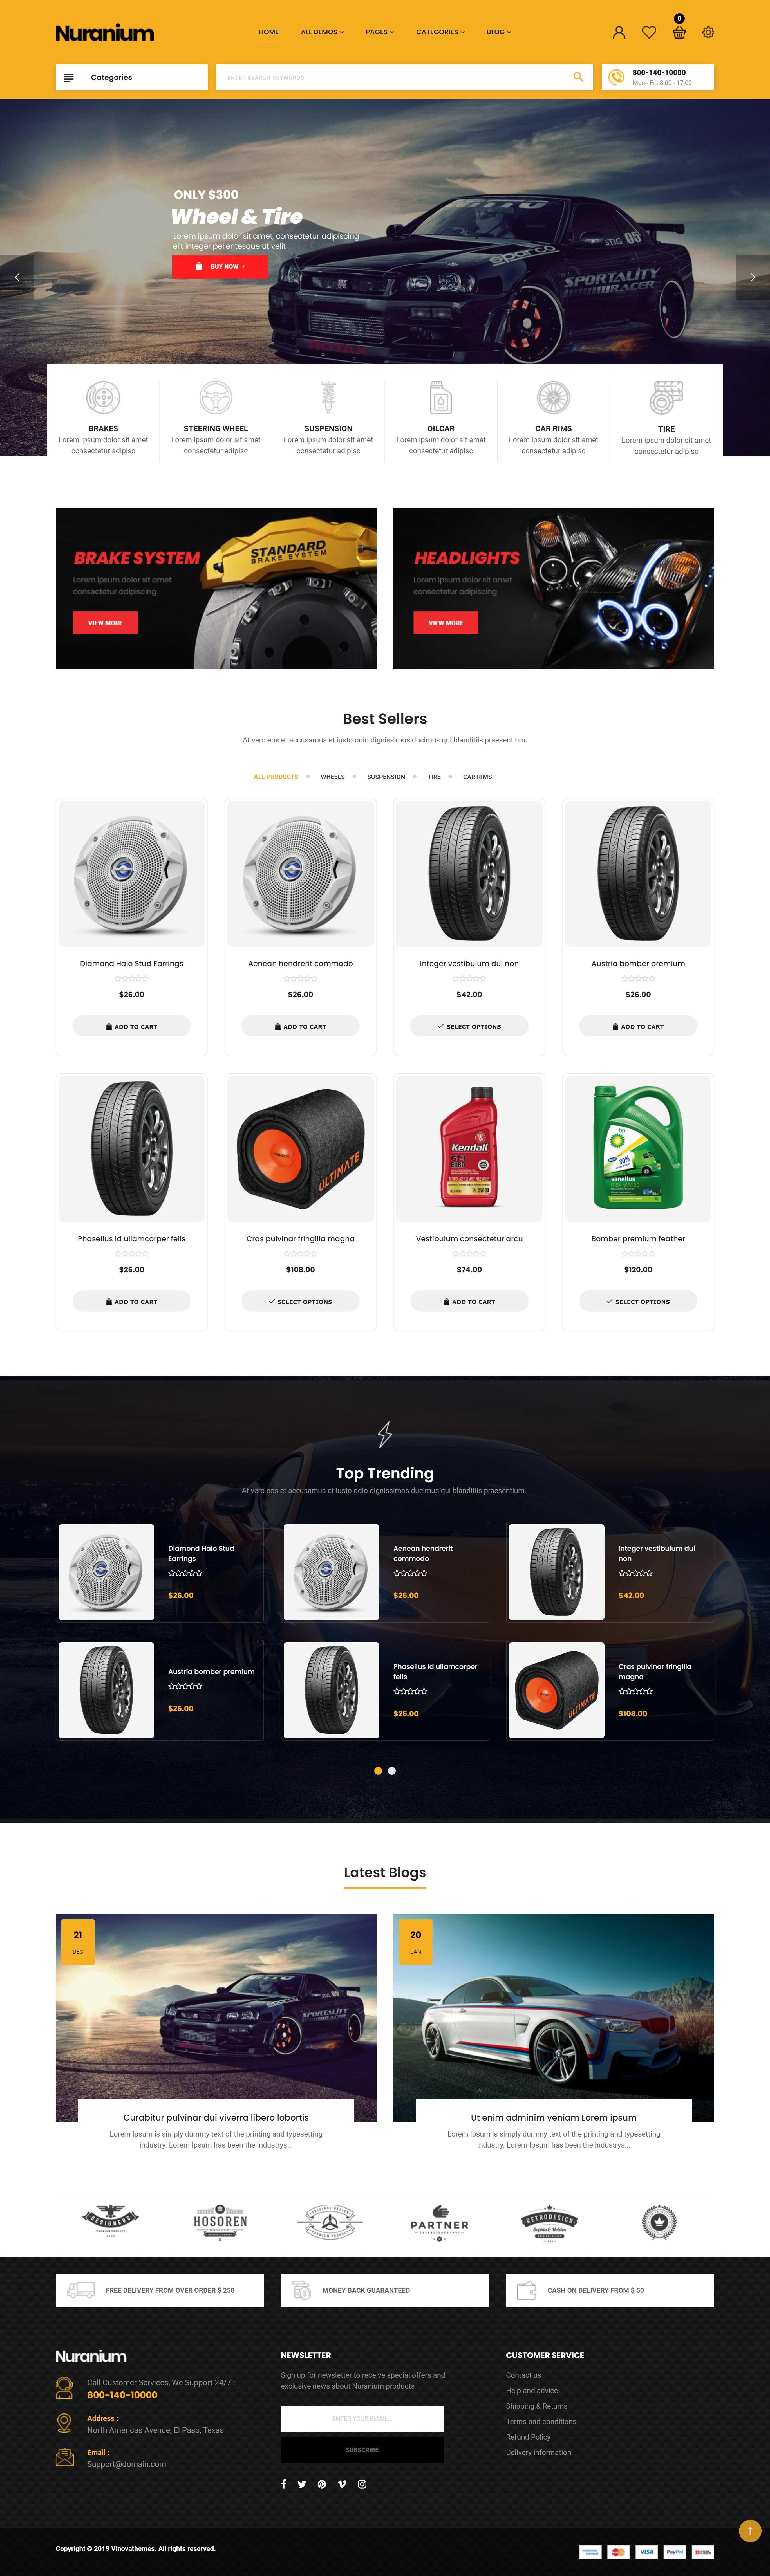 Mẫu thiết kế website Gara dịch vụ sửa chữa, chăm sóc, bảo dưỡng ô tô, xe hơi đẹp 03 demo_vinovathemes_com/nuranium1/en/?home=home_36